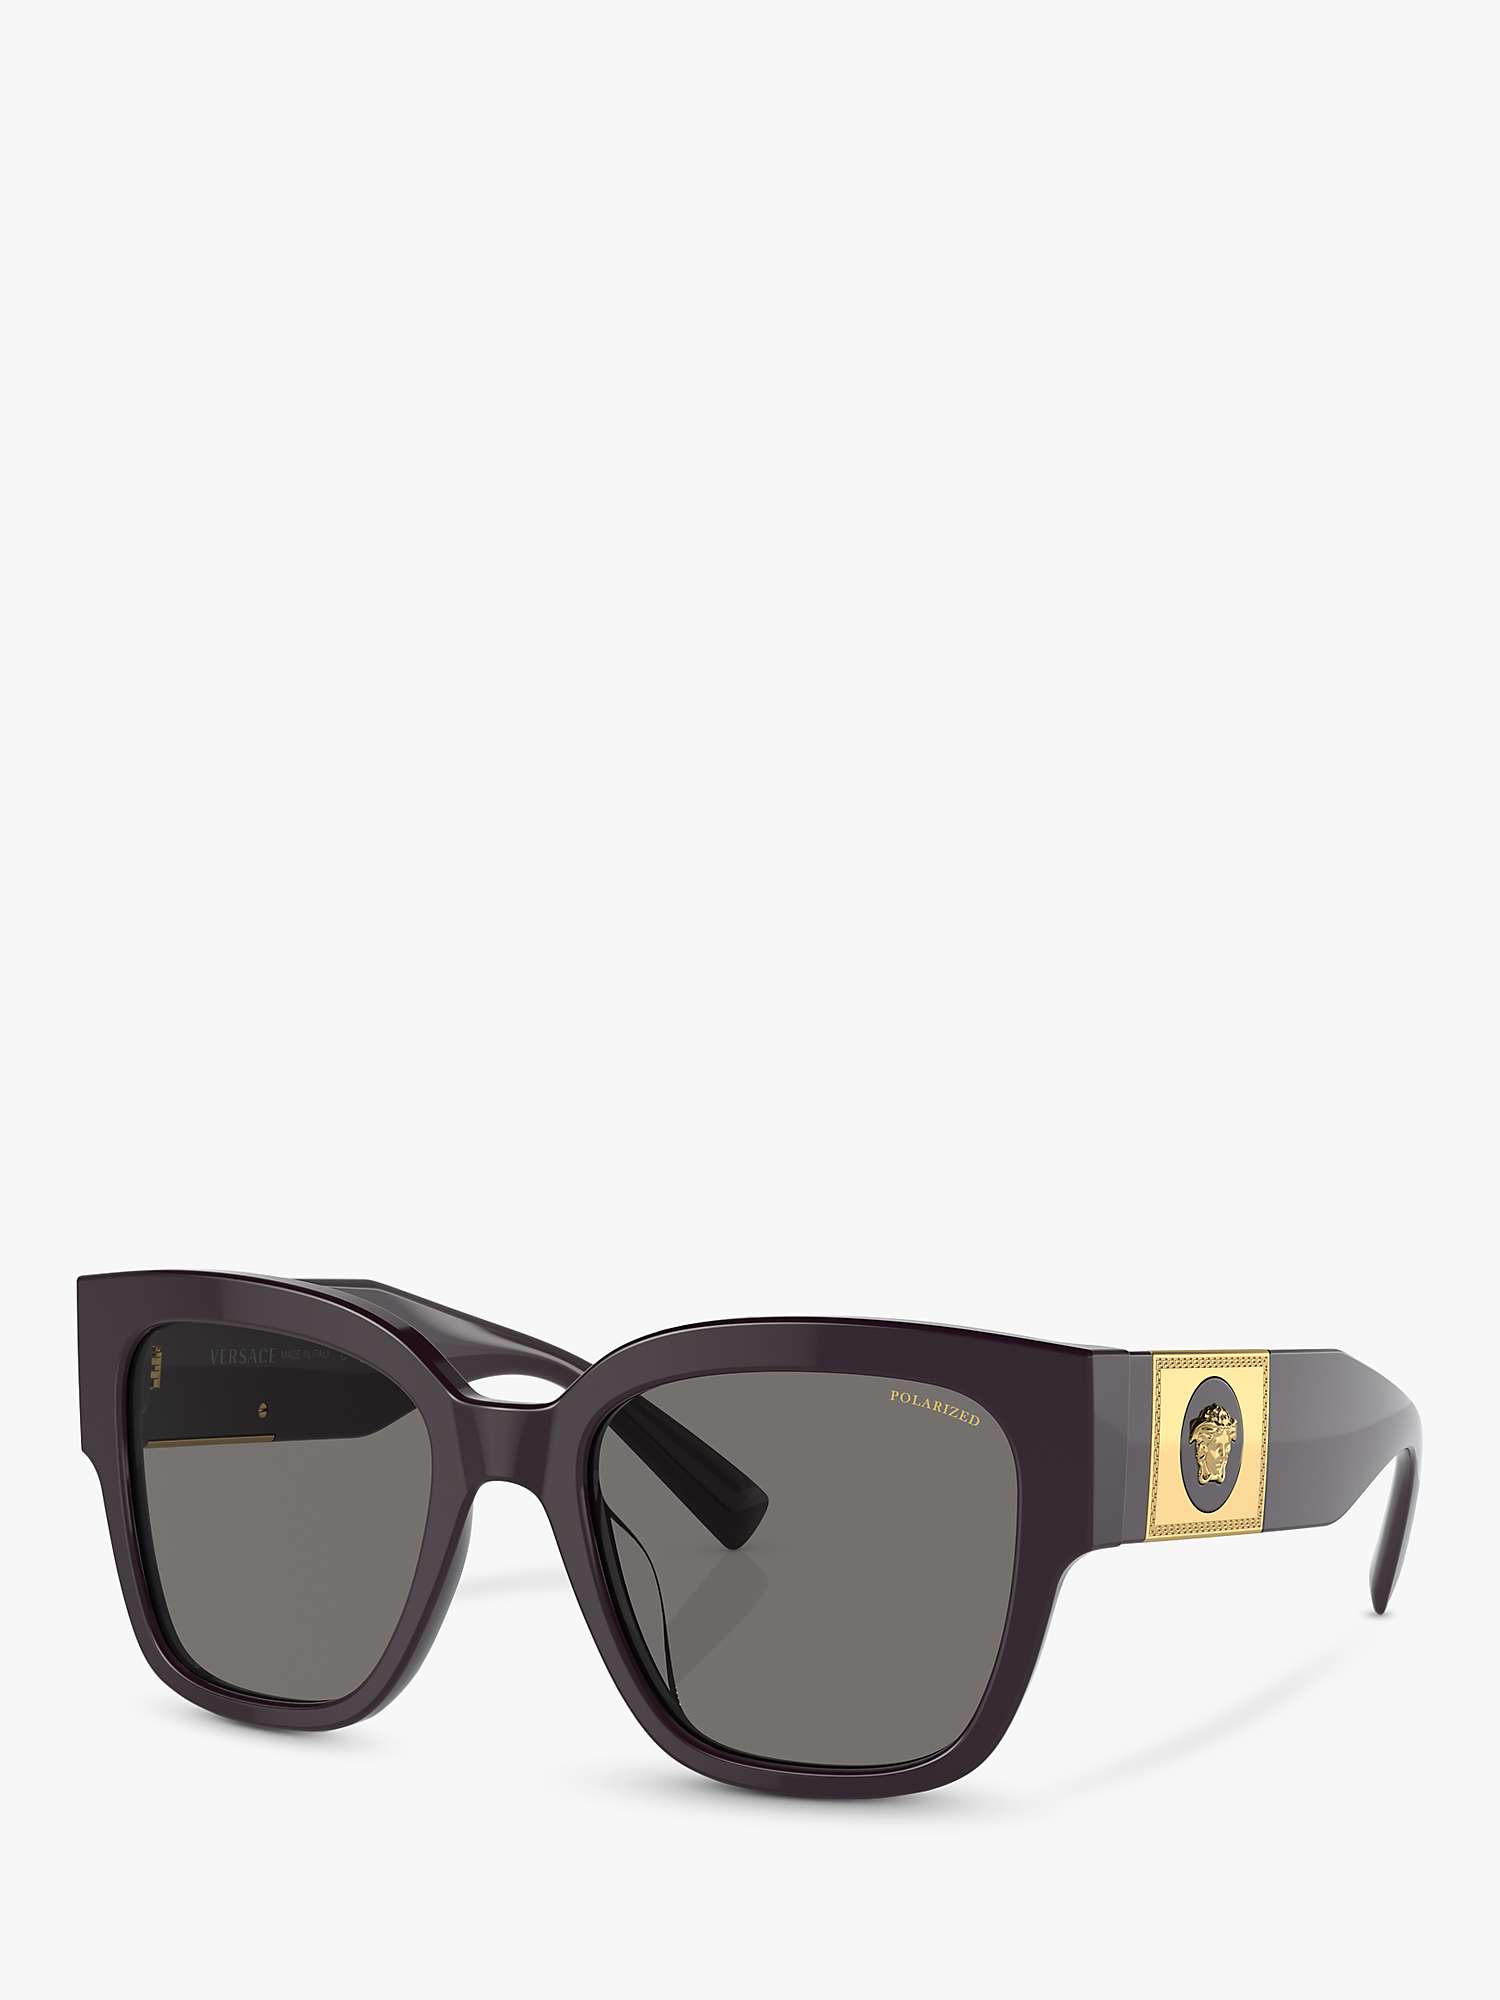 Buy Versace VE4437U Women's Pillow Sunglasses, Bordeaux Online at johnlewis.com